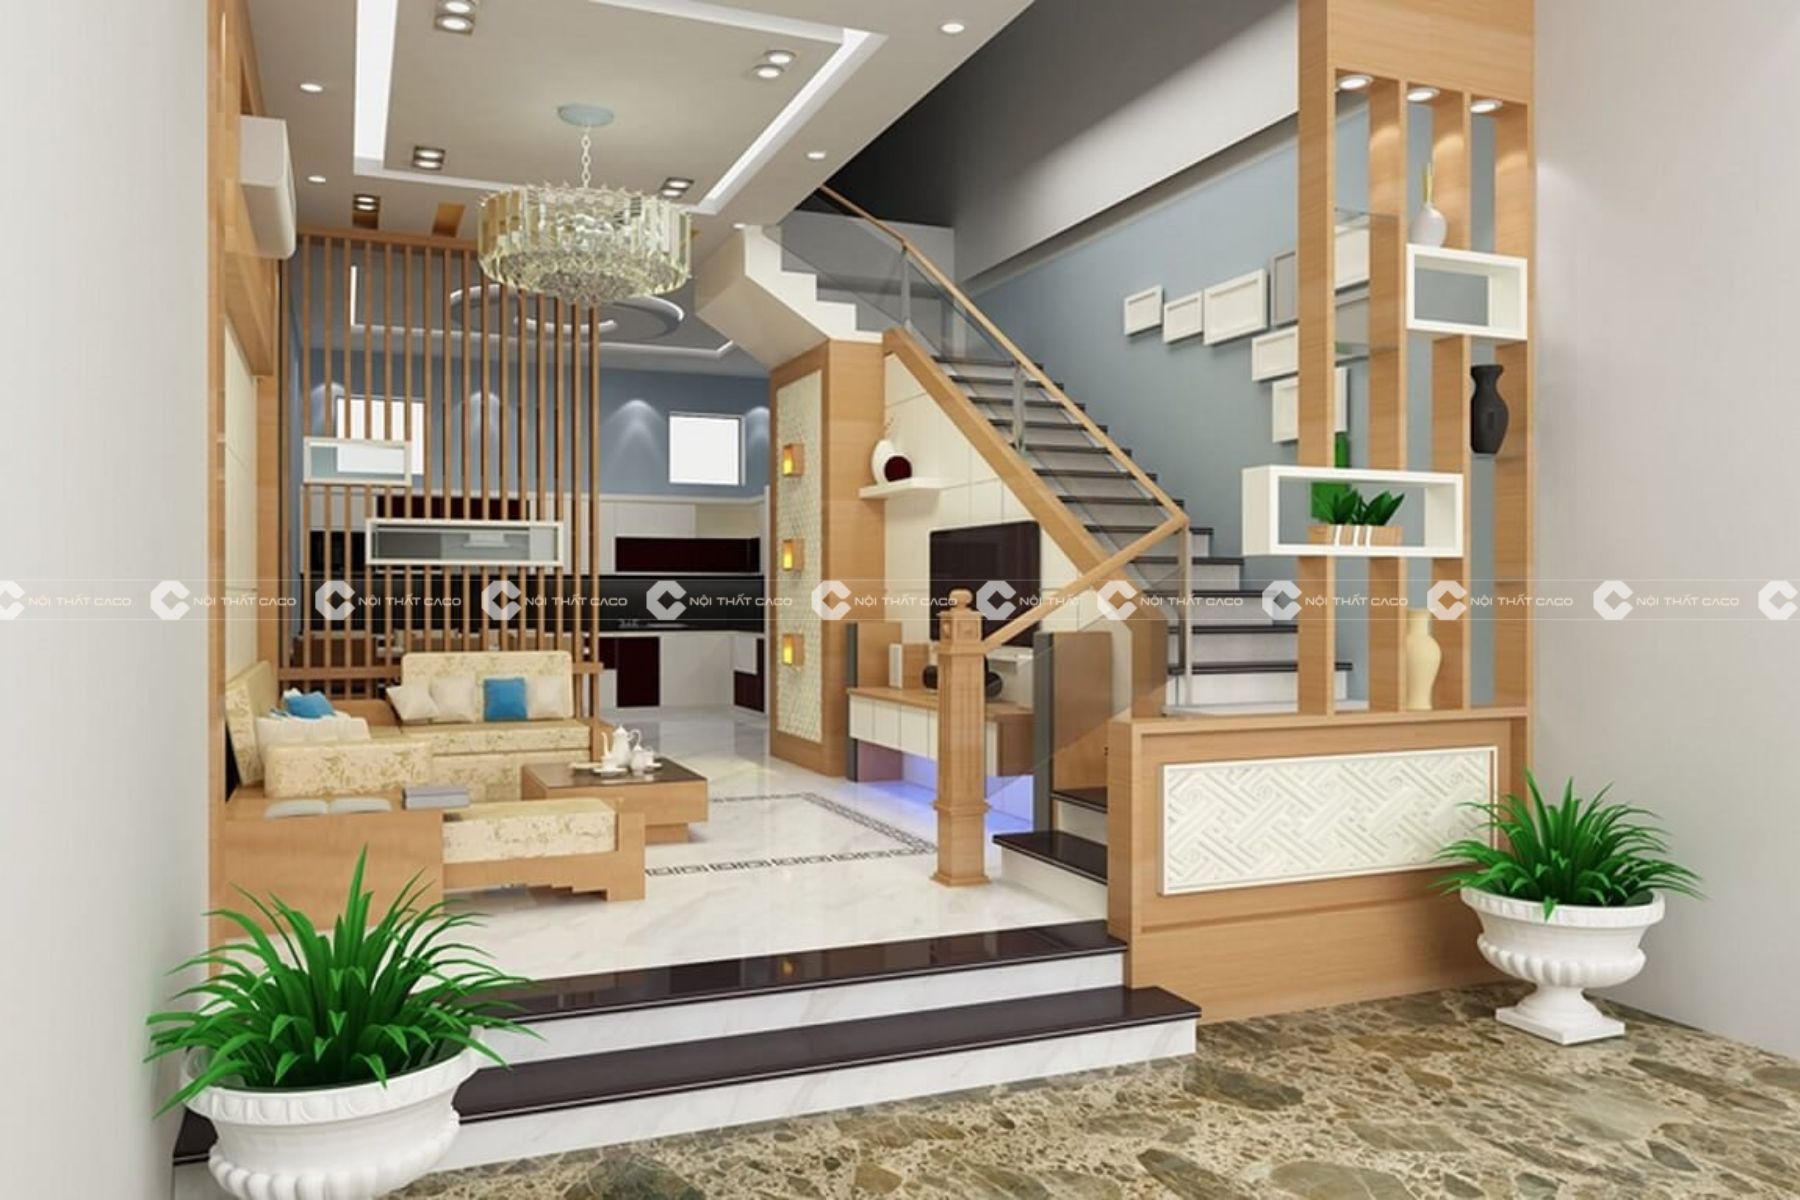 Thiết kế thi công nội thất phòng khách nhà phố sang trọng quận 10- Chị Trang